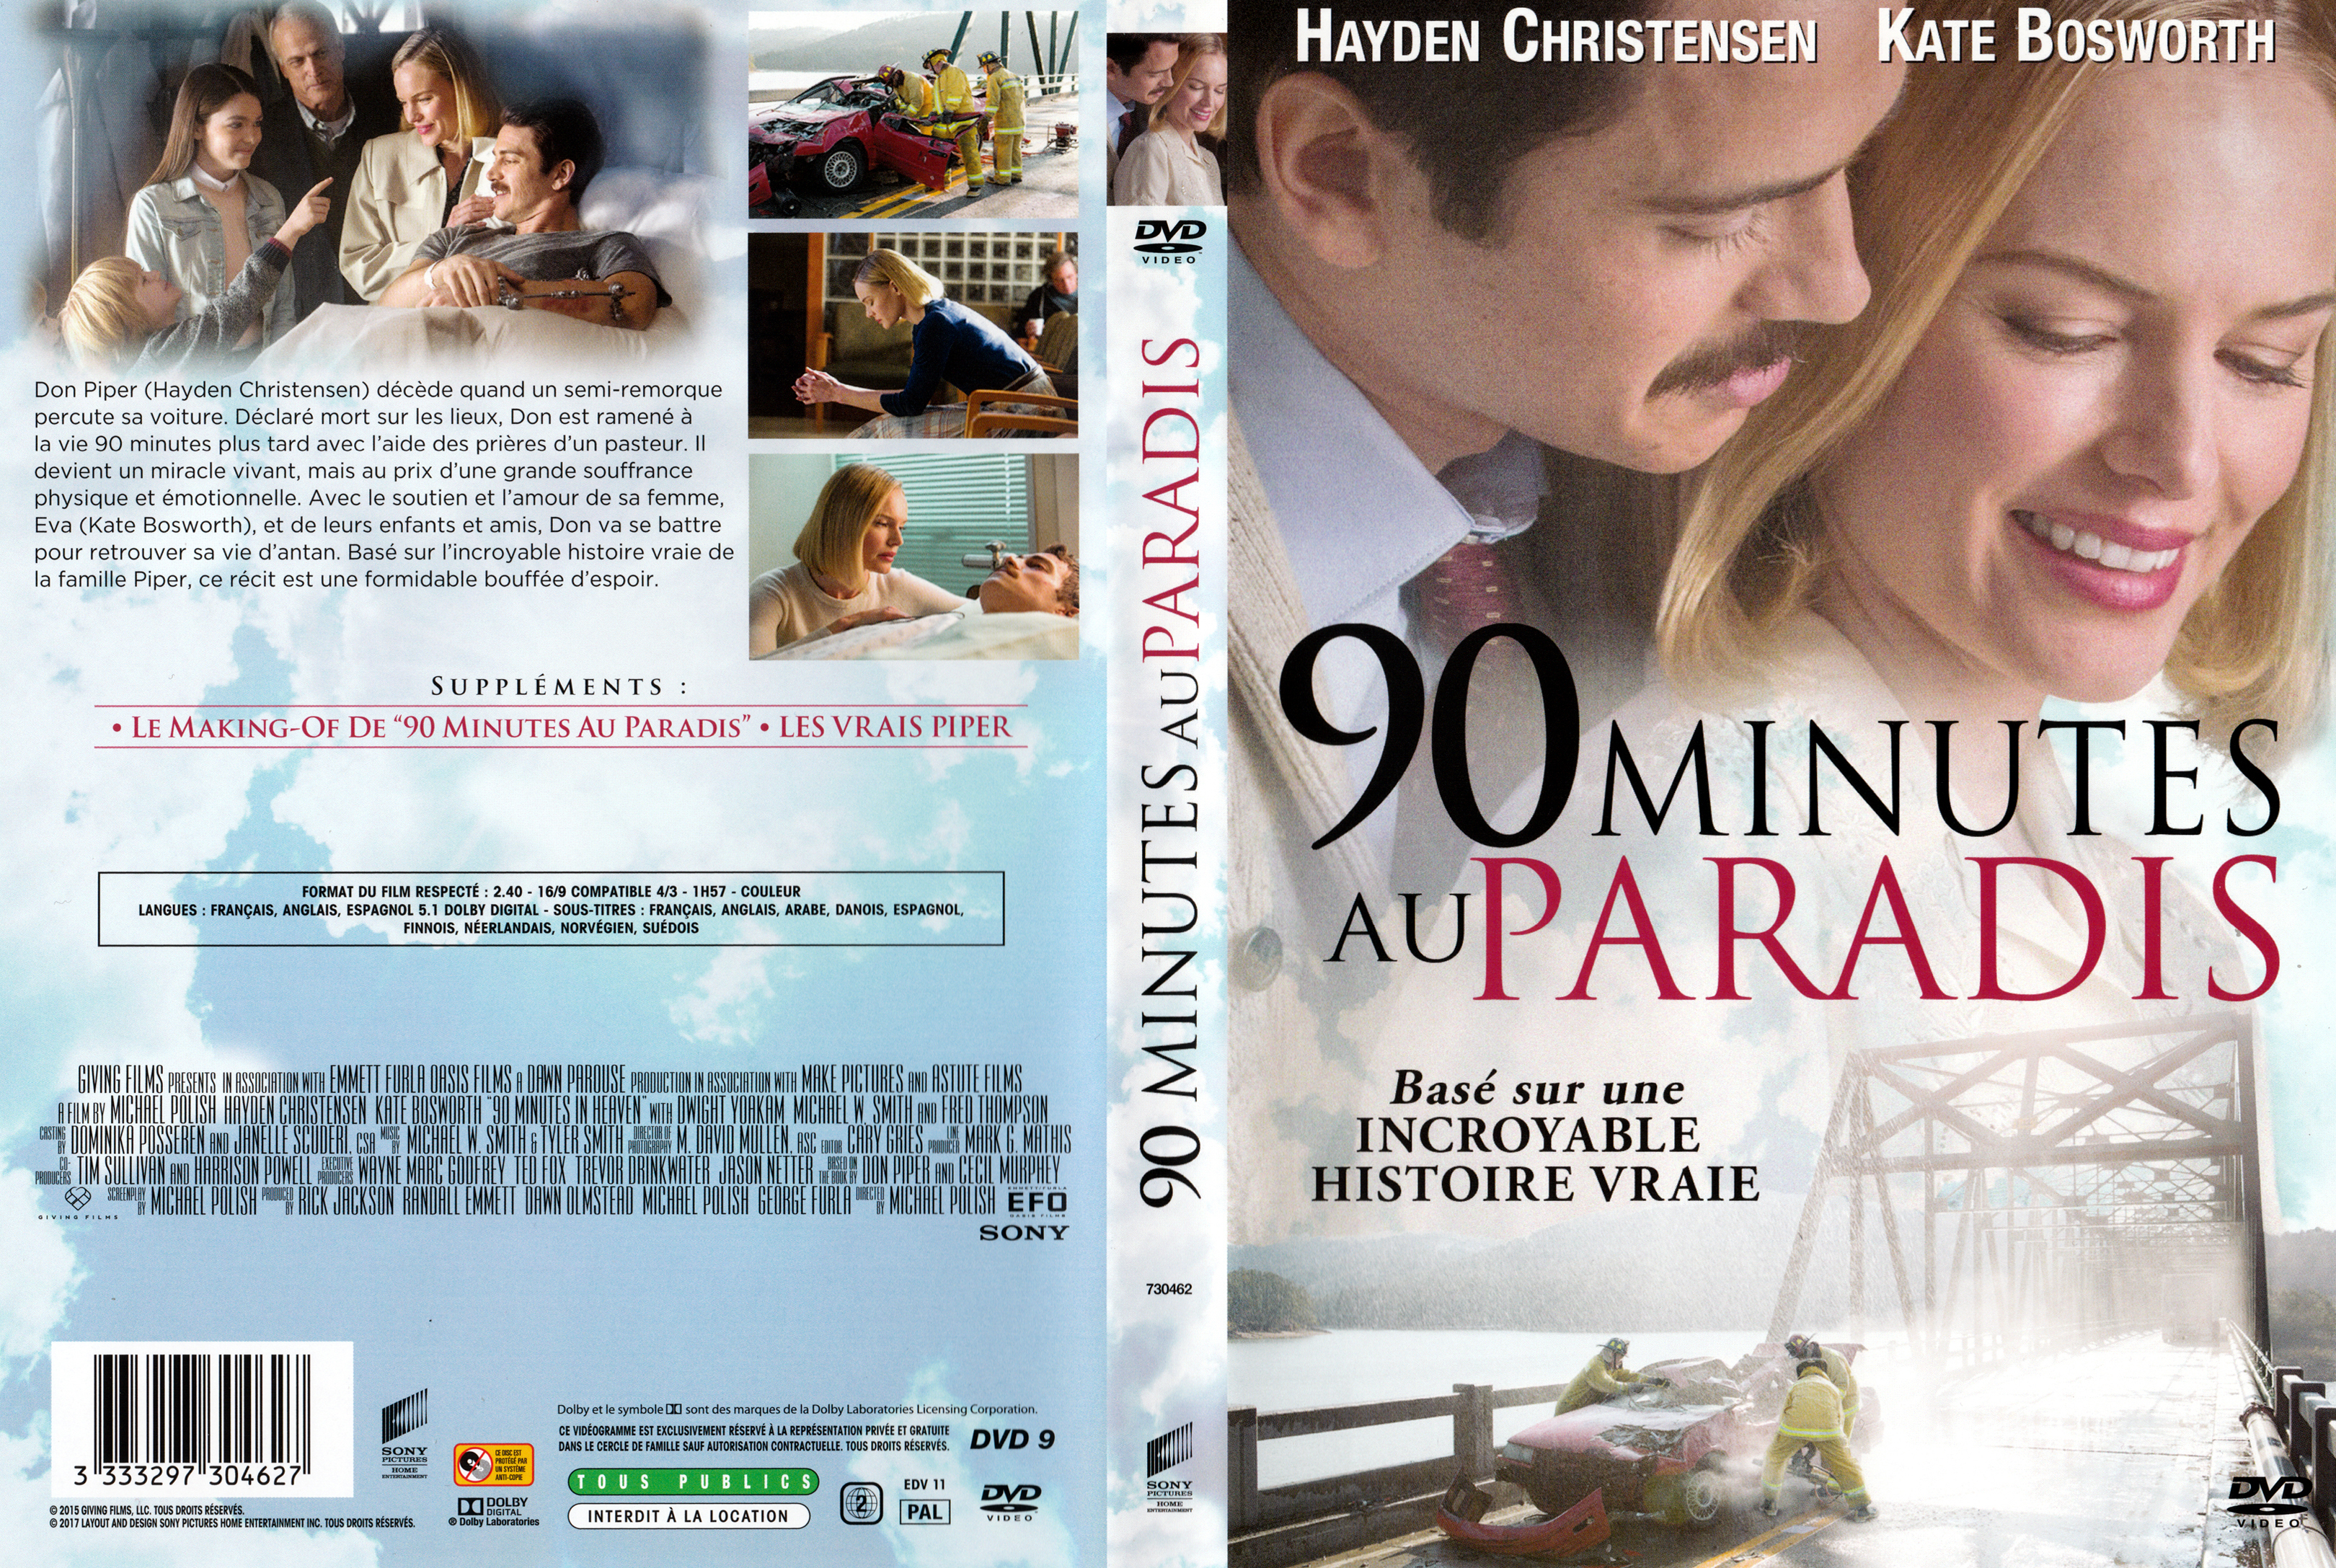 Jaquette DVD 90 minutes au paradis